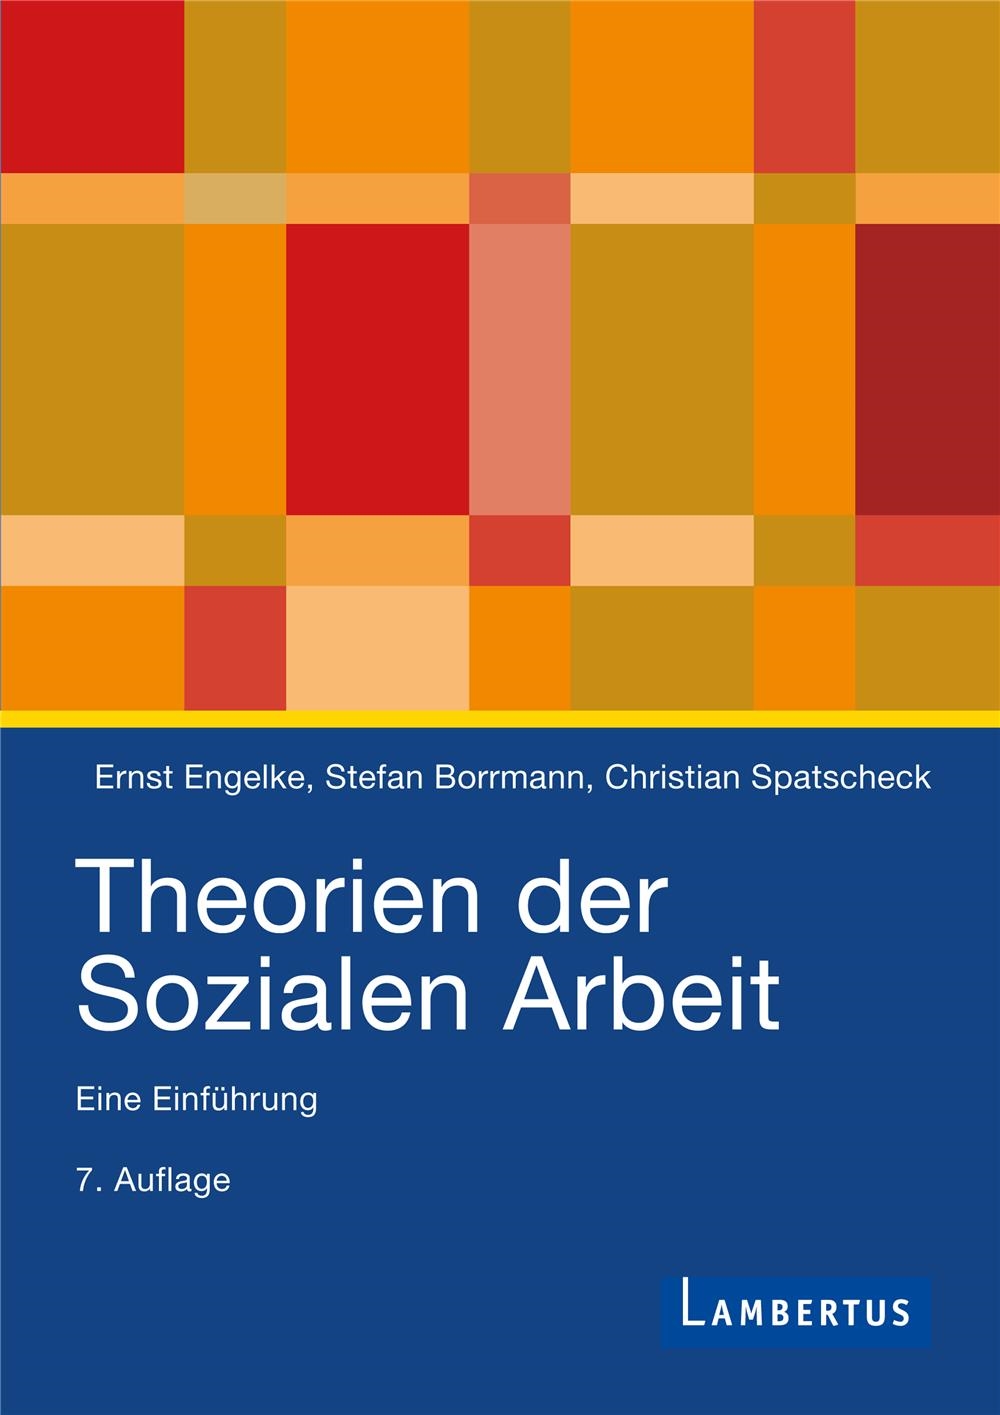 Theorien der Sozialen Arbeit 7.A.